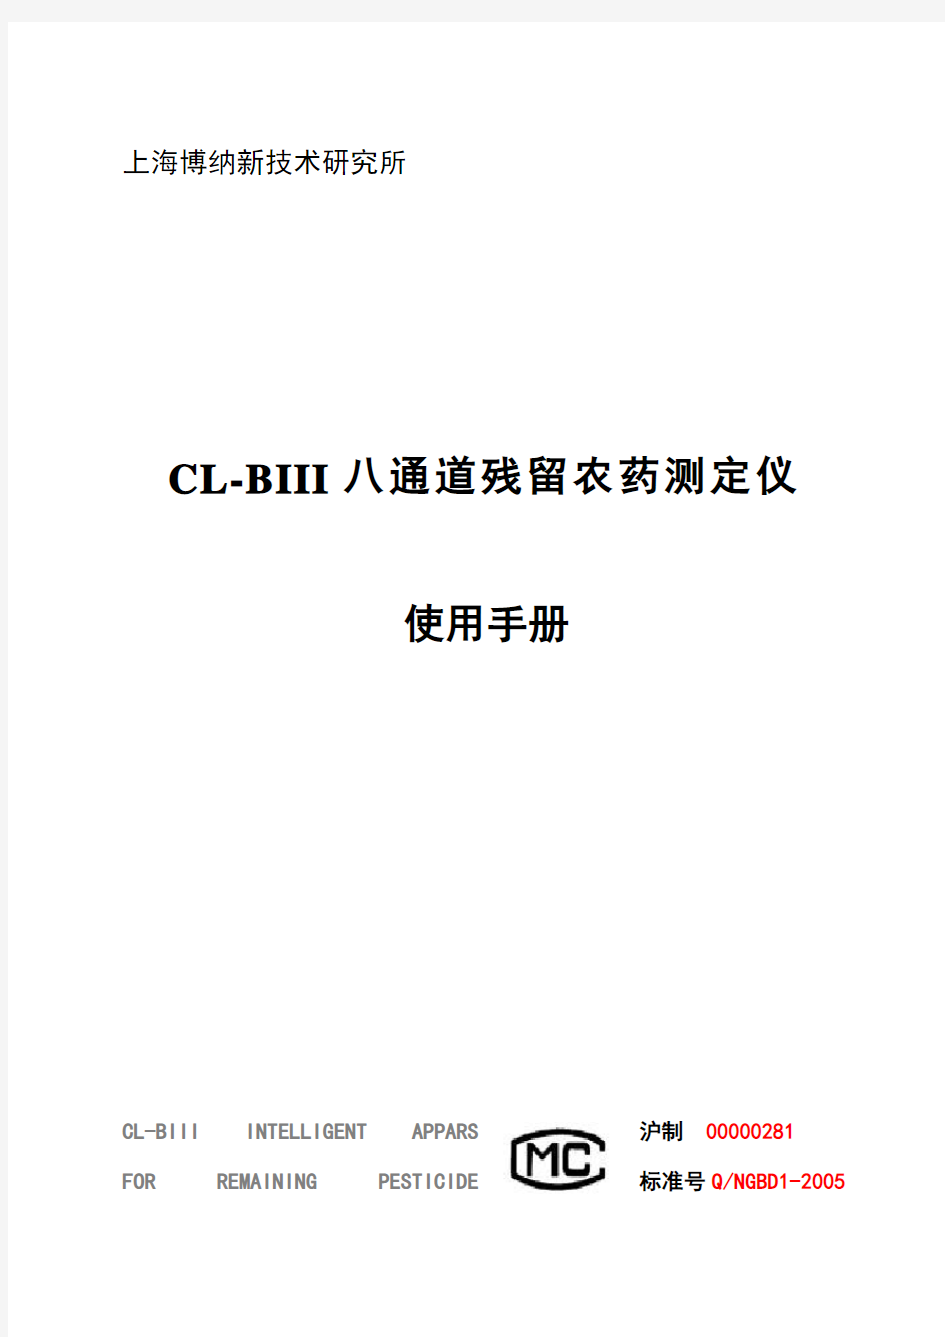 CL-BIII农残测定仪(八通道型)说明书